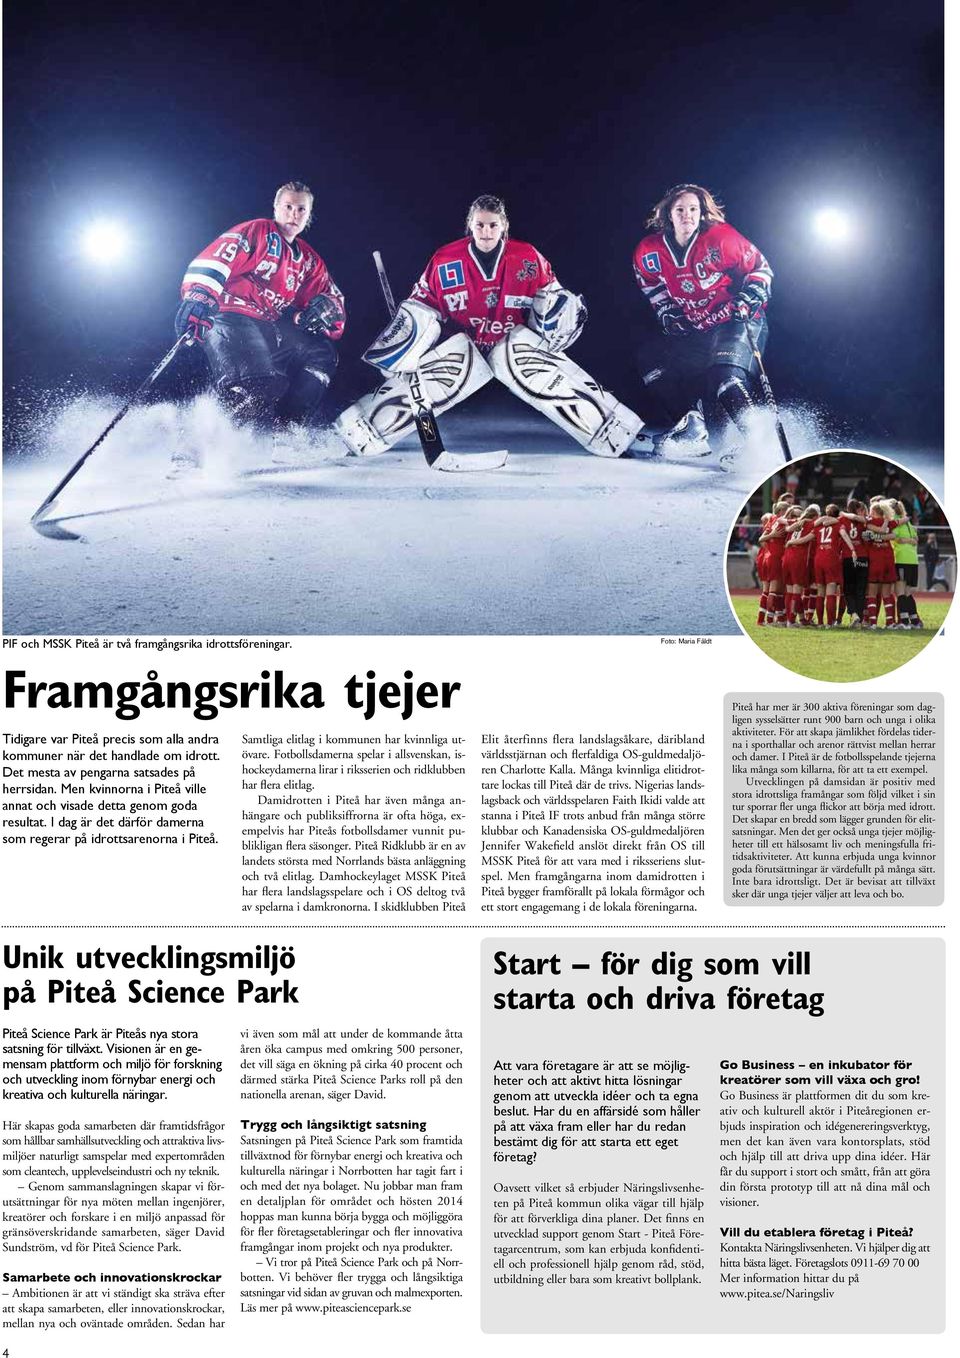 Samtliga elitlag i kommunen har kvinnliga utövare. Fotbollsdamerna spelar i allsvenskan, ishockeydamerna lirar i riksserien och ridklubben har flera elitlag.